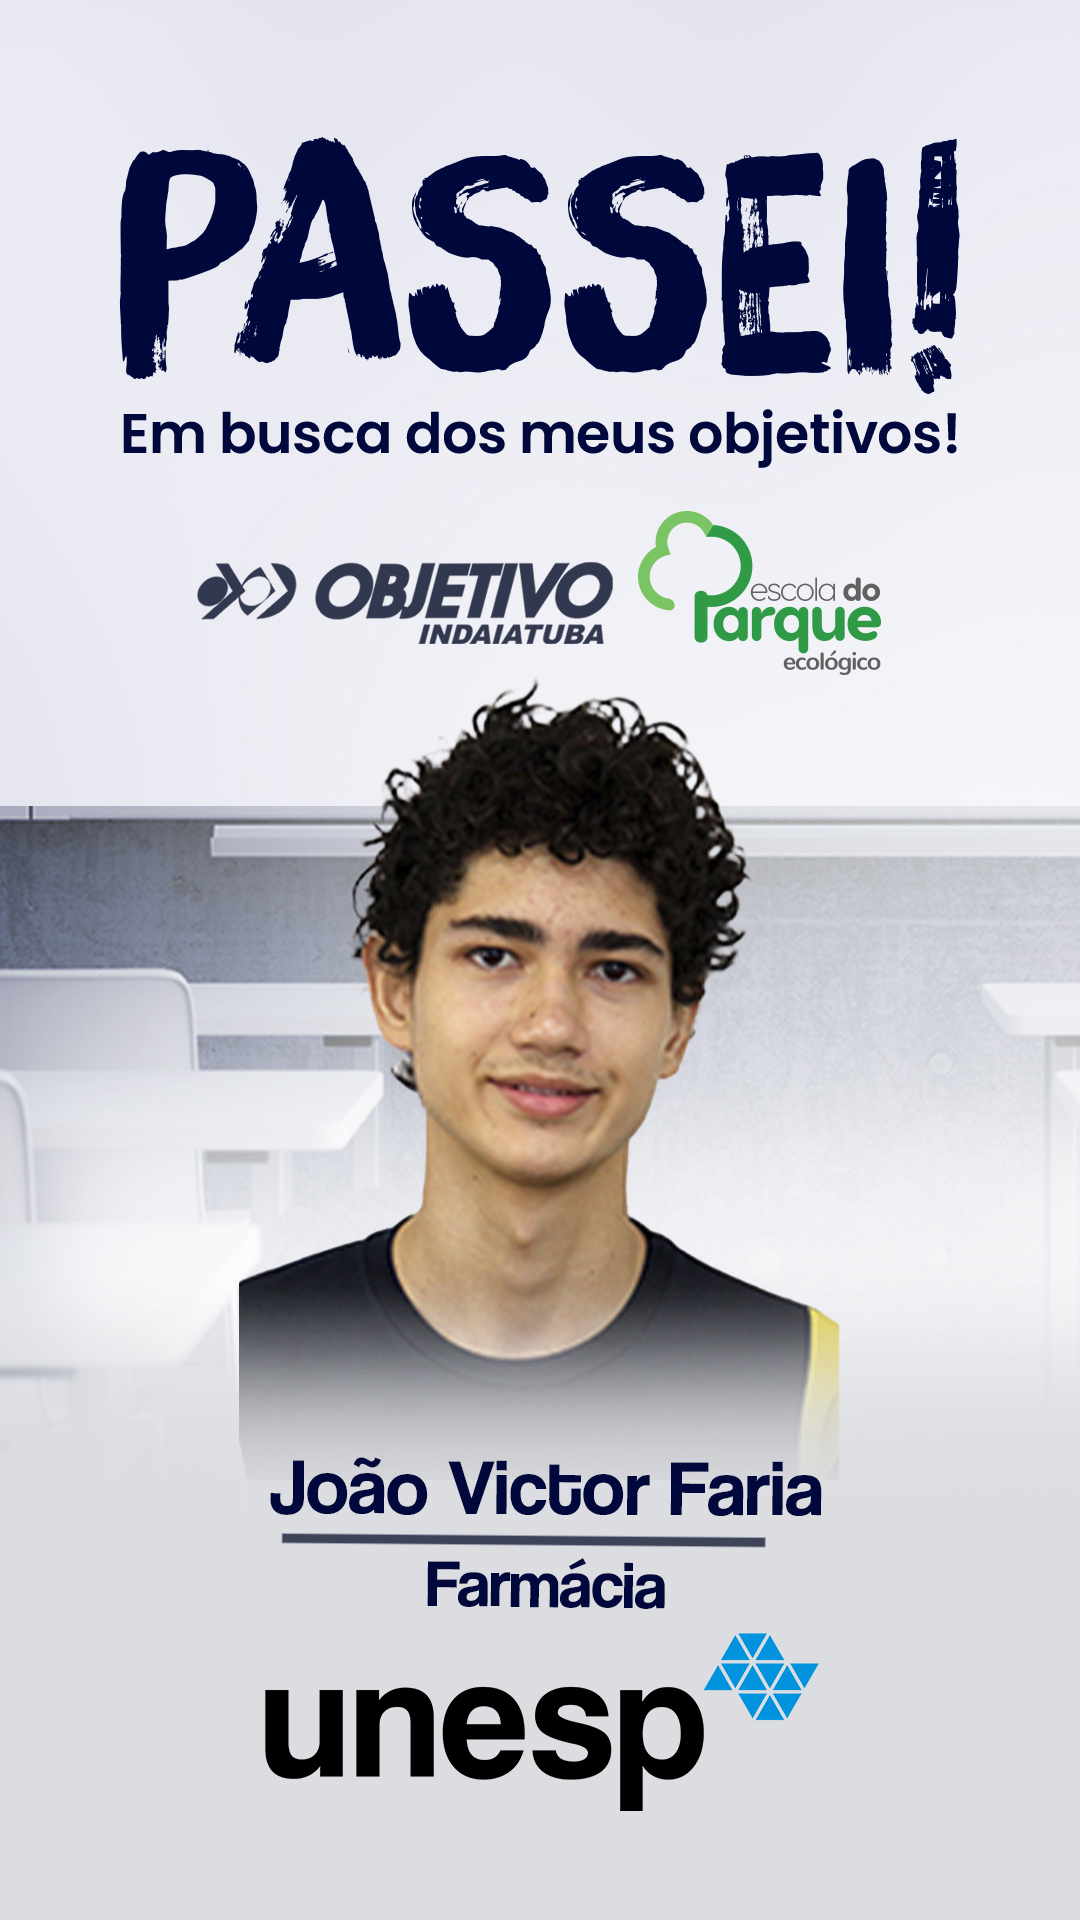 João Victor Faria